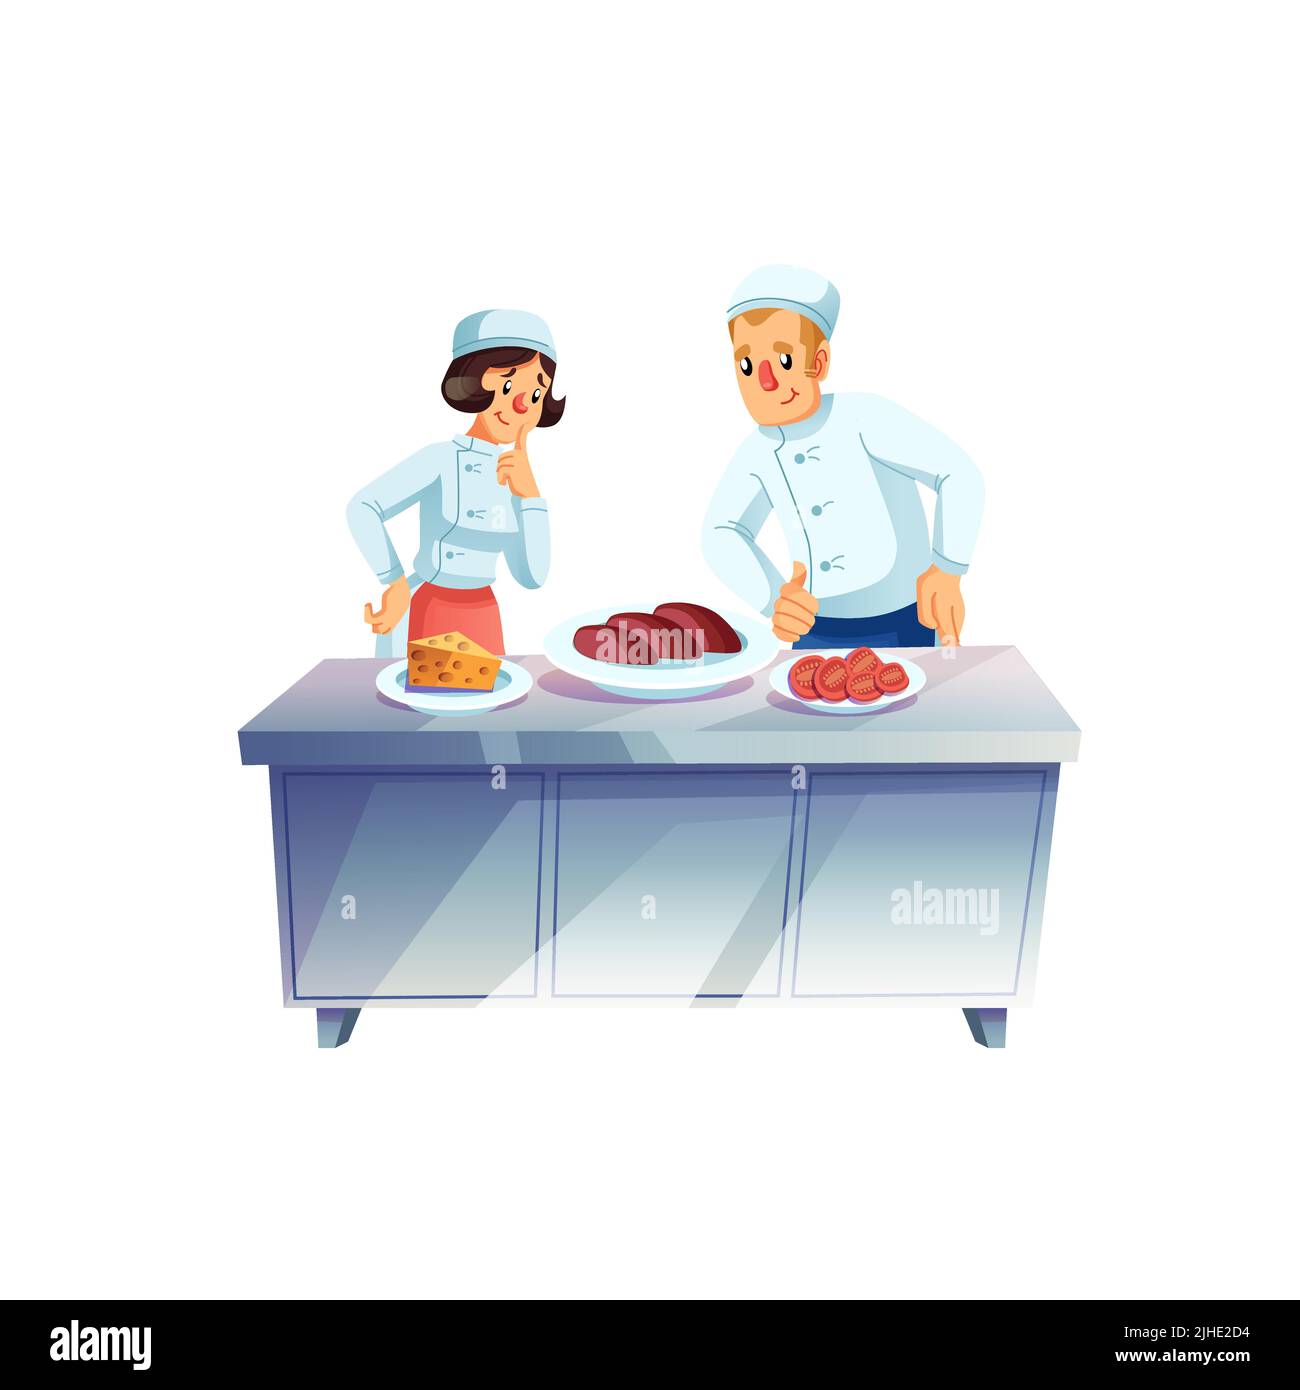 https://c8.alamy.com/compes/2jhe2d4/dibujos-animados-planos-personajes-chef-asistentes-cocina-comida-elegir-ingredientes-profesional-de-la-cocina-de-alimentos-flujo-de-trabajo-vector-ilustracion-concepto-2jhe2d4.jpg